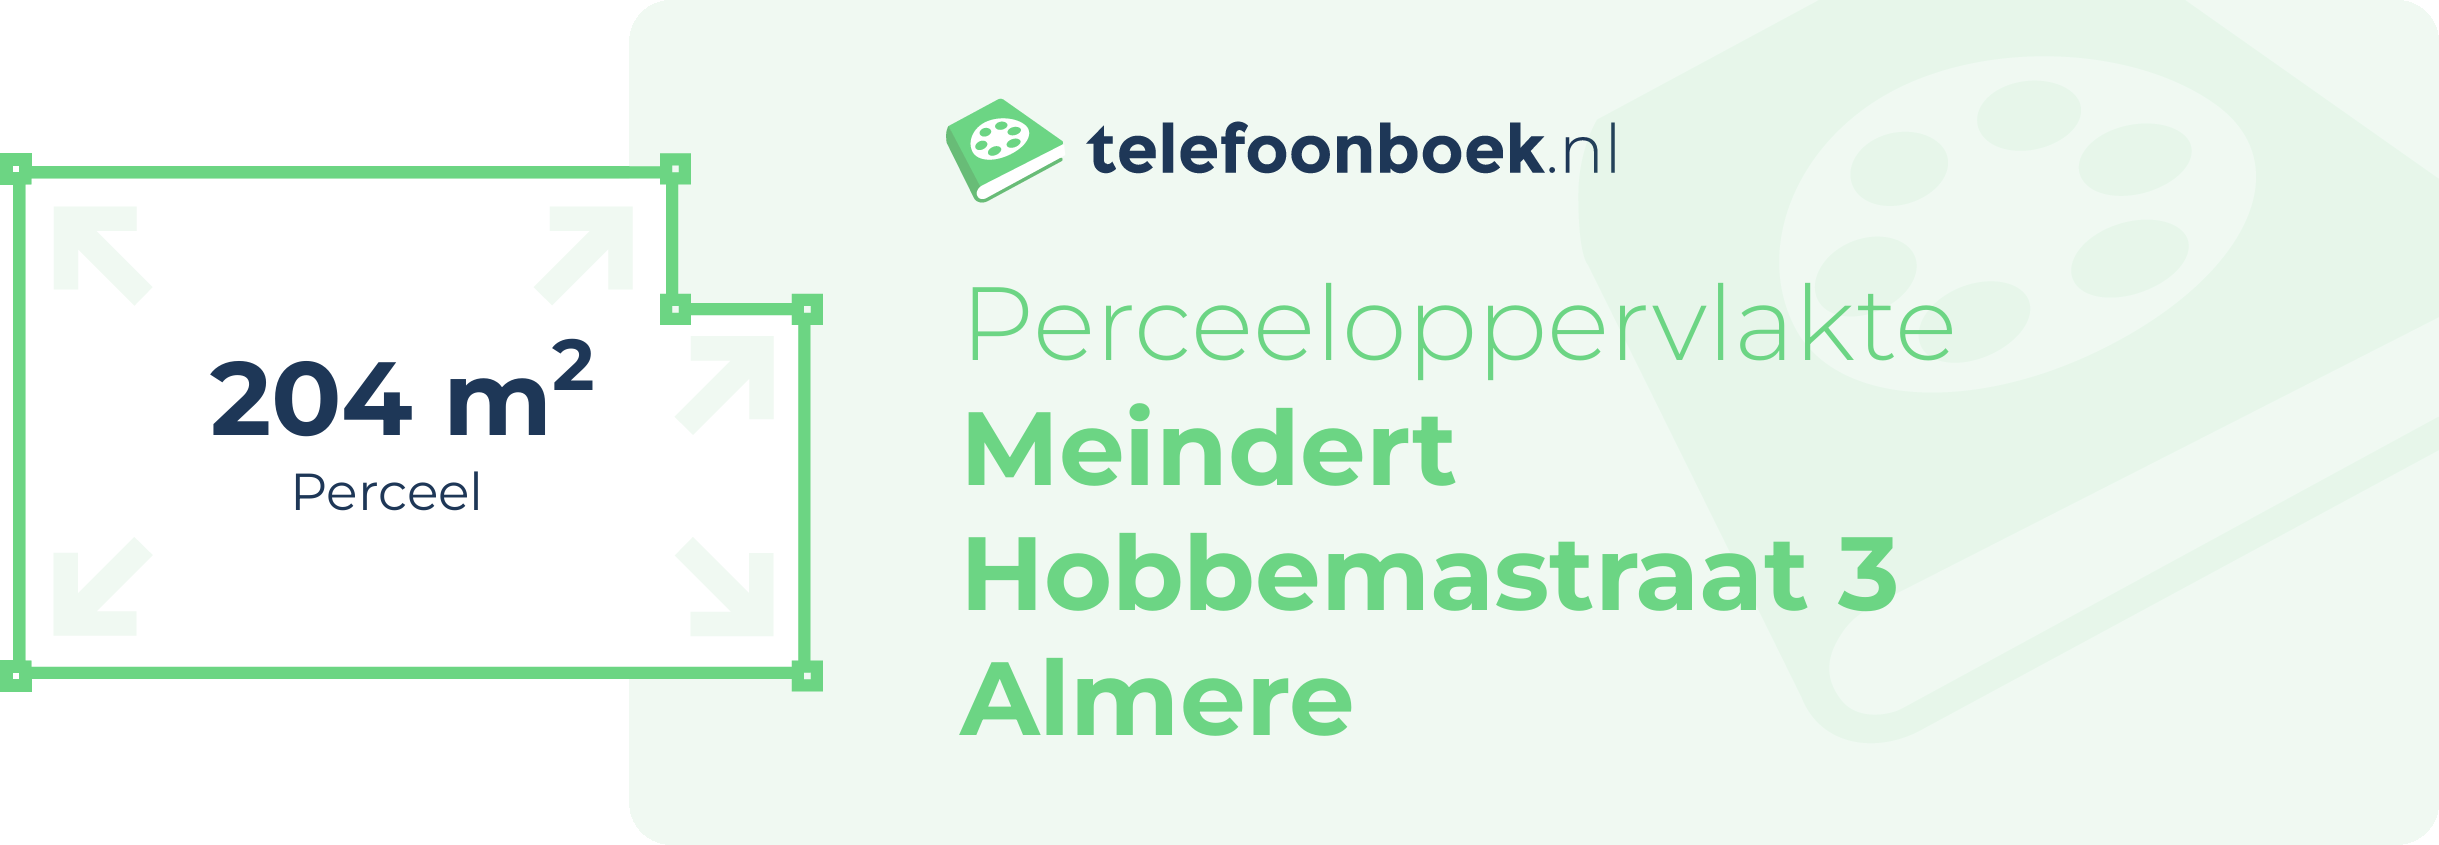 Perceeloppervlakte Meindert Hobbemastraat 3 Almere